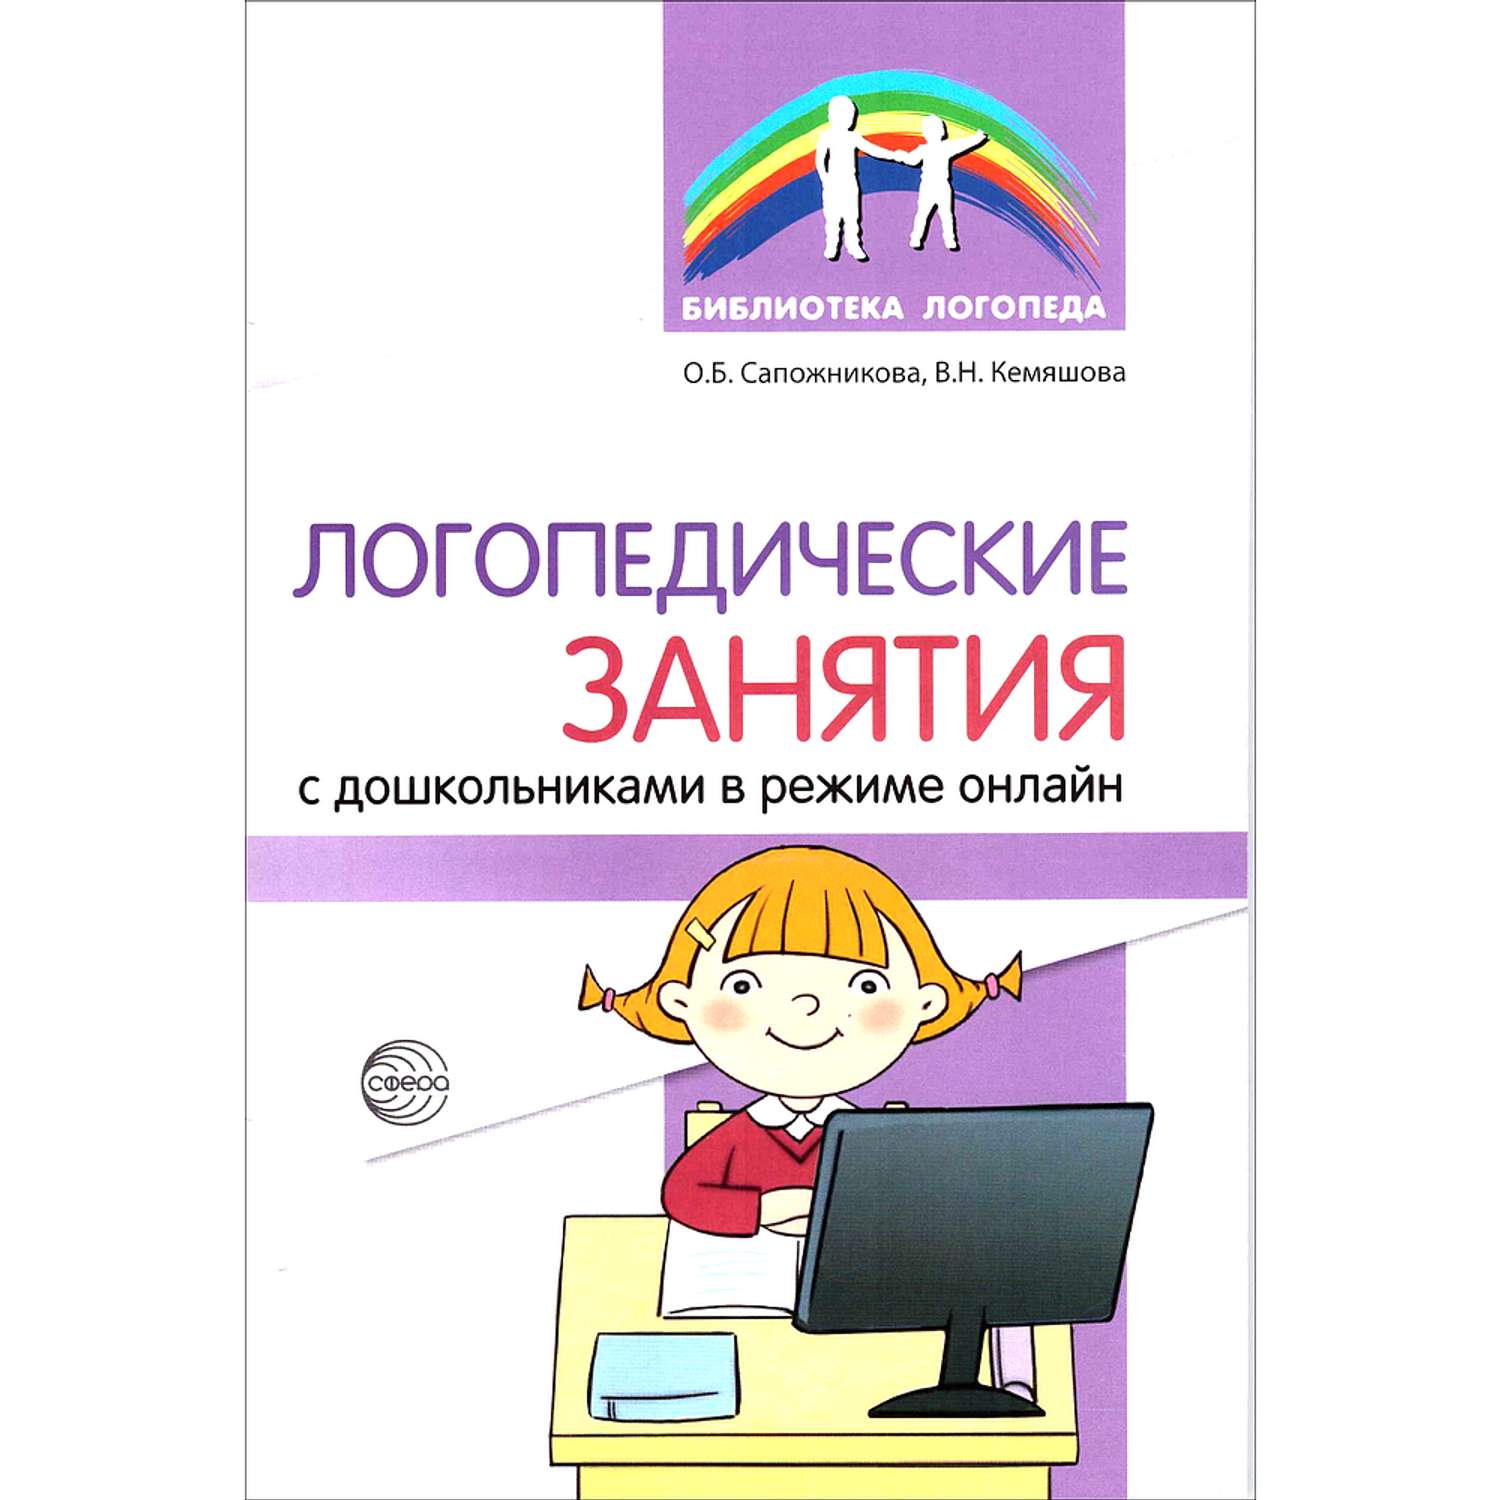 Книга ТЦ Сфера Логопедические занятия с дошкольниками в режиме онлайн - фото 1